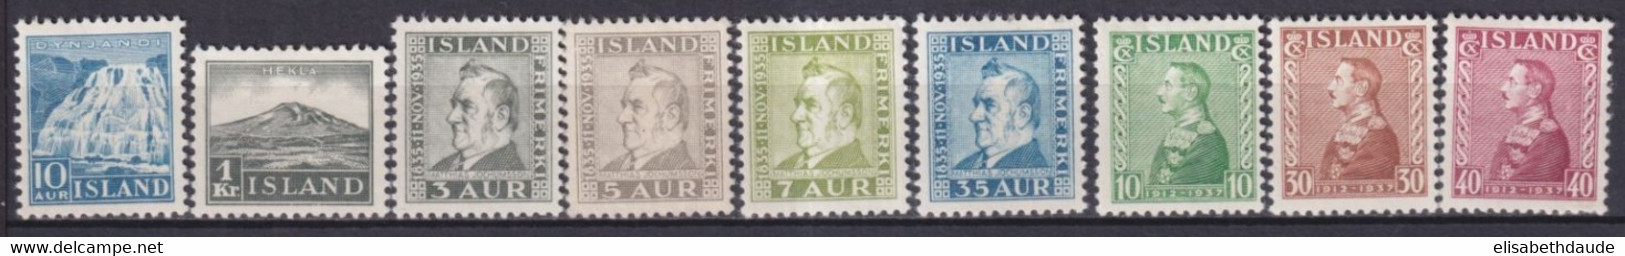 ISLANDE - 1935/1937 - YVERT N° 158/166 * MLH - COTE = 109 EUR. - Nuovi